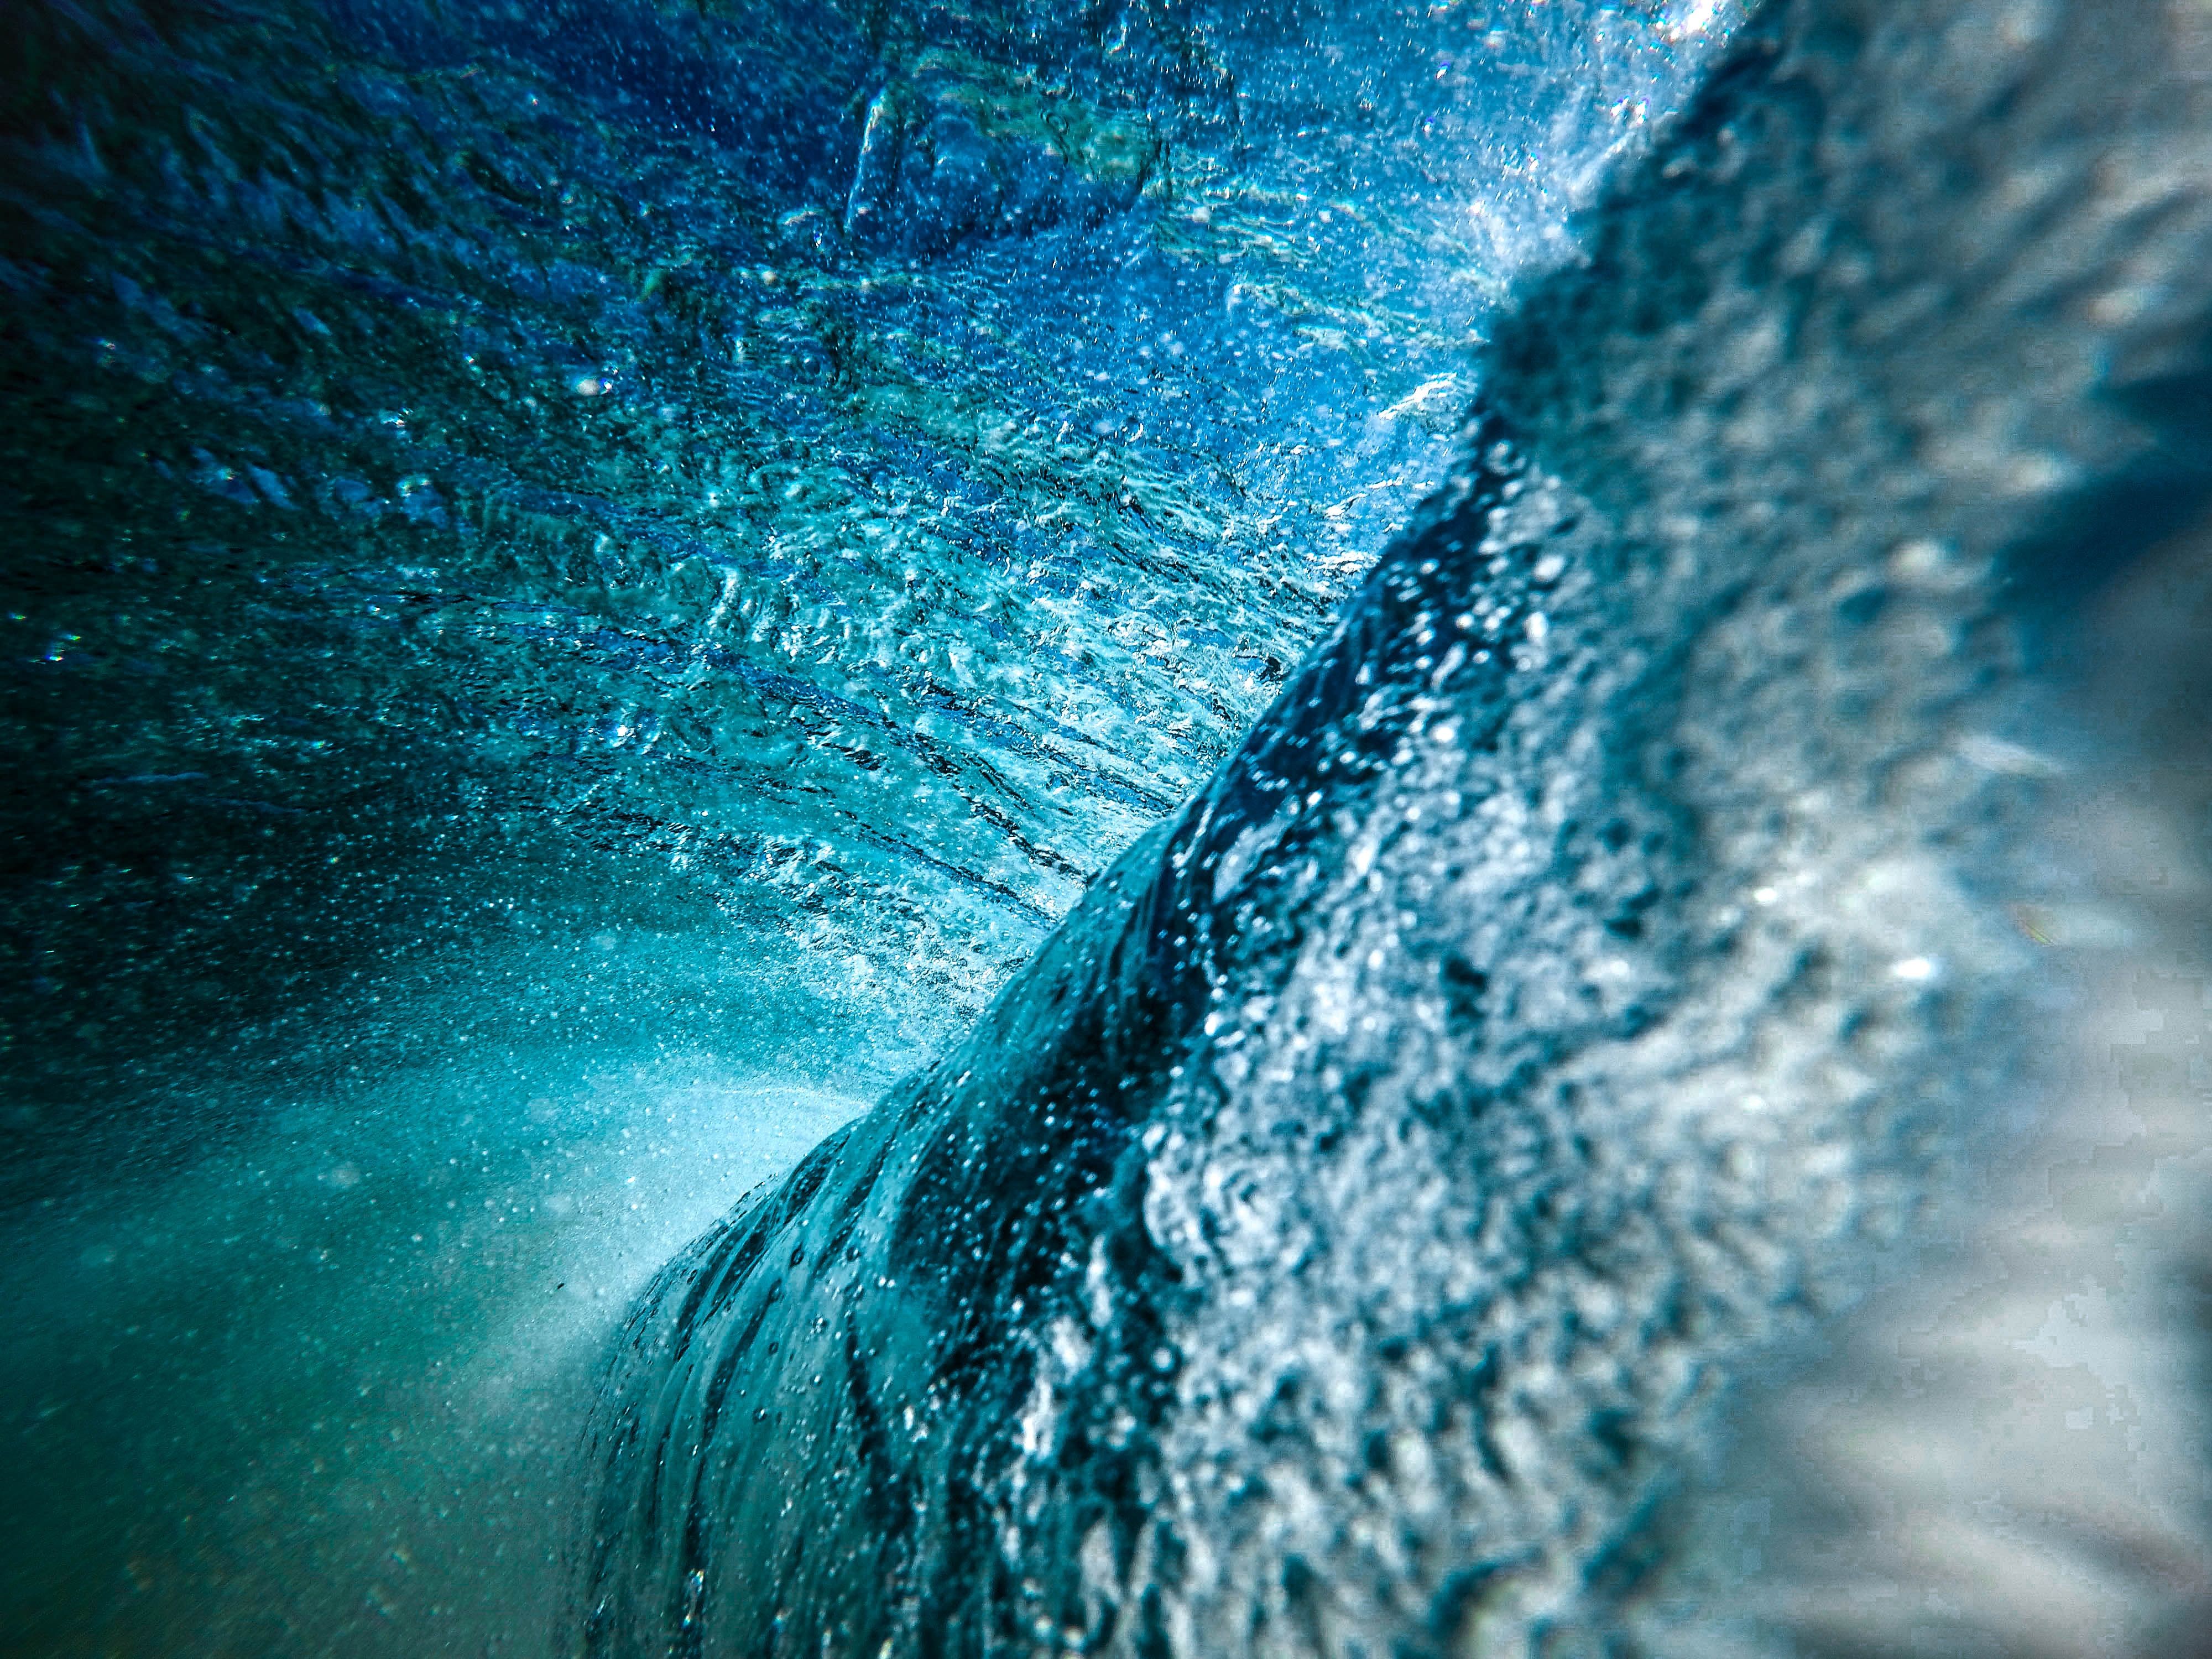 4000x3000 #wave, #hd background, #Free , #wallpaper, # wallpaper, #sea, #splash, #pretty background, #abstract, #hd wallpaper, #ripple, #water, #ocean, #amazing wallpaper, #wallpaper hd, #underwater, #blue, #bubble